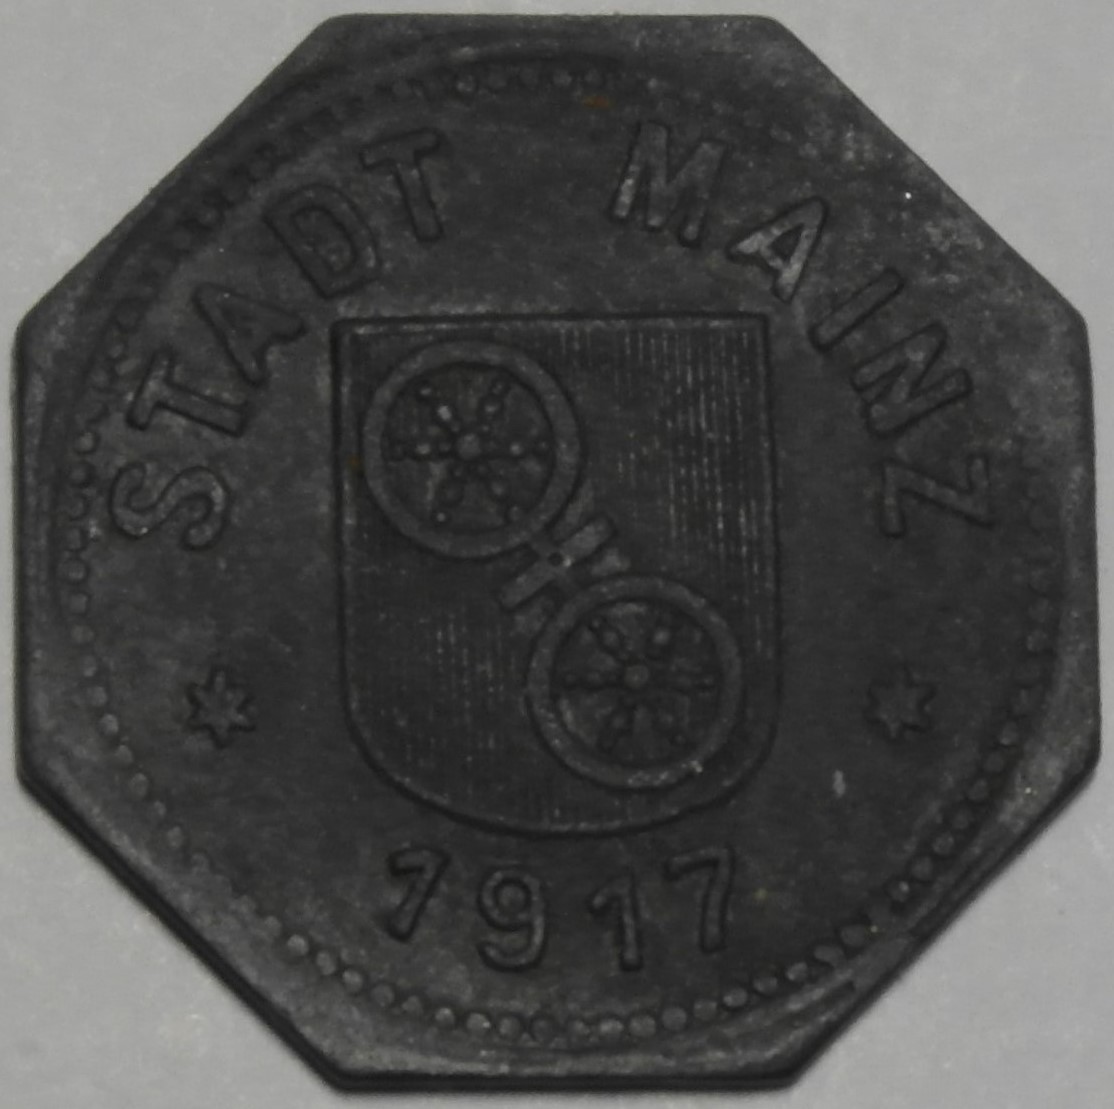 10 Pfennig Mainz 1917 b - Kopie.JPG